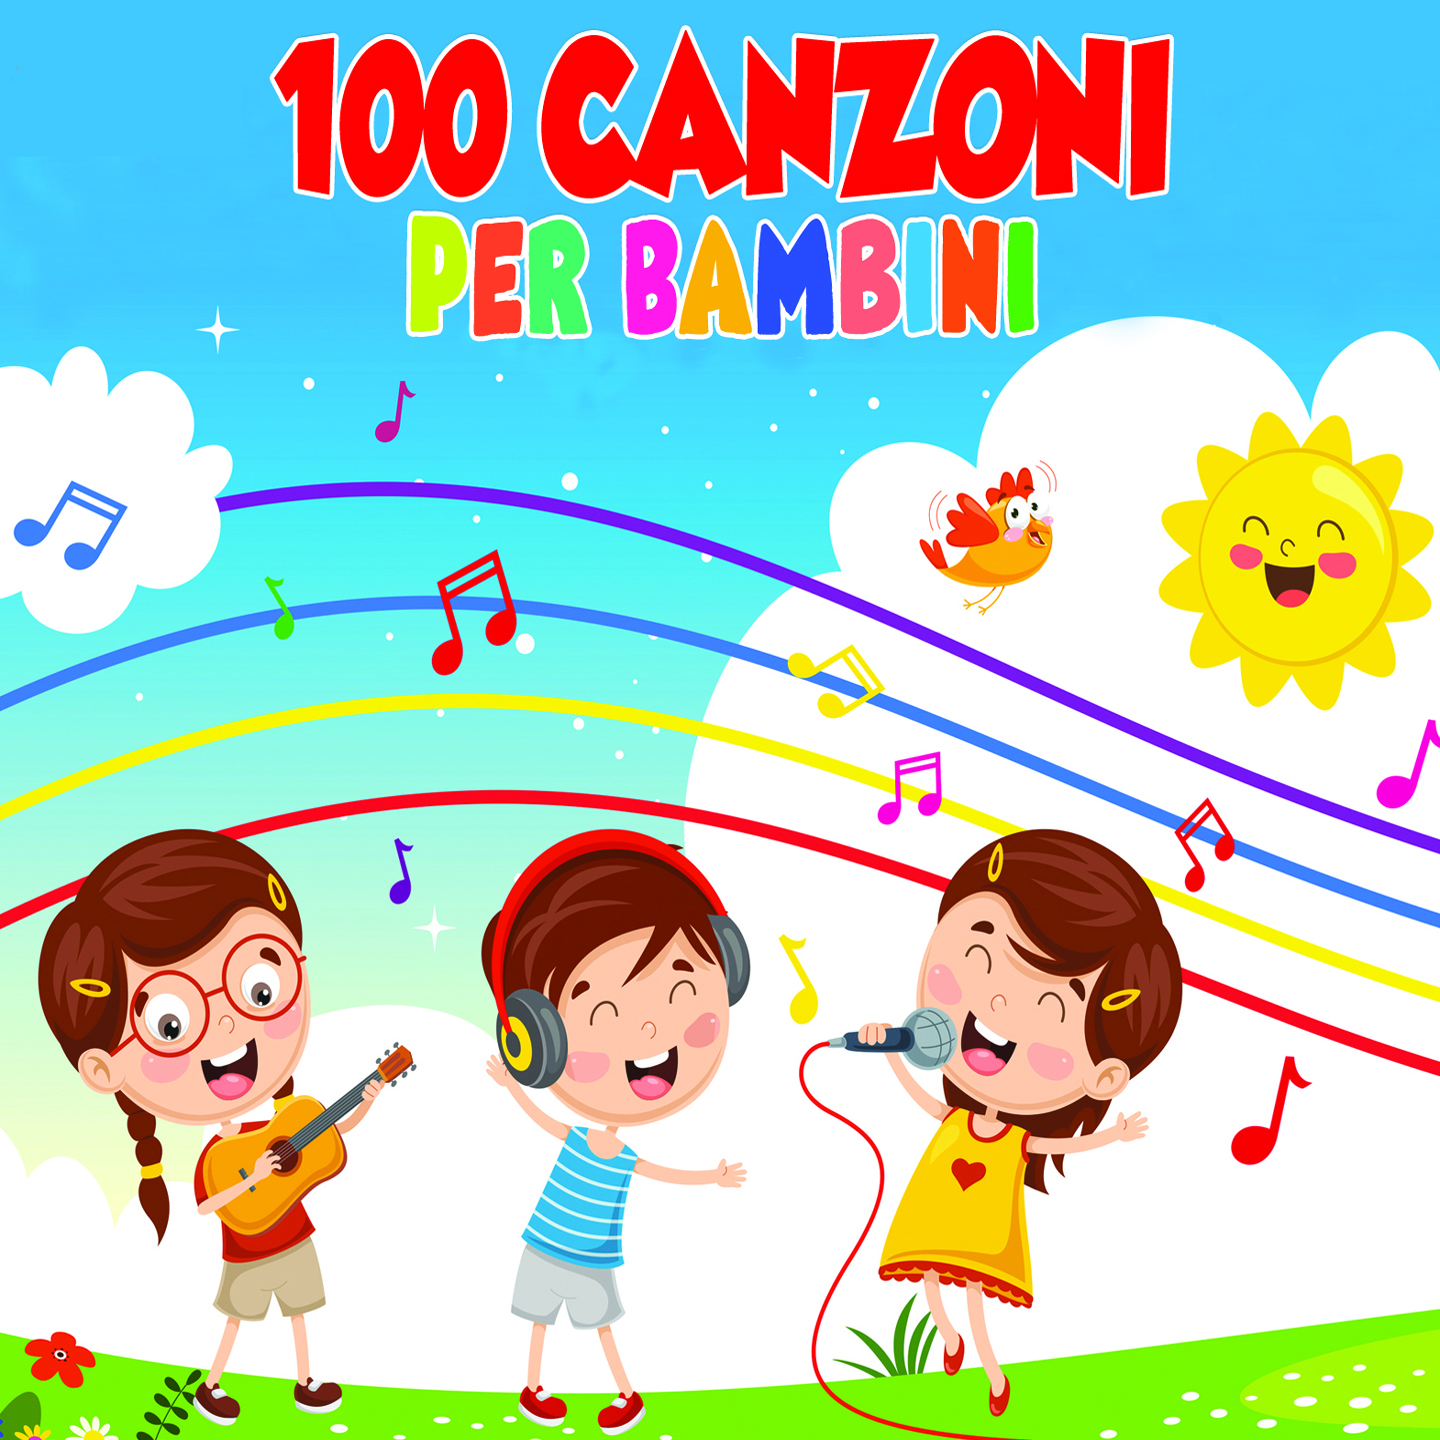 100 Canzoni per bambini - Halidon